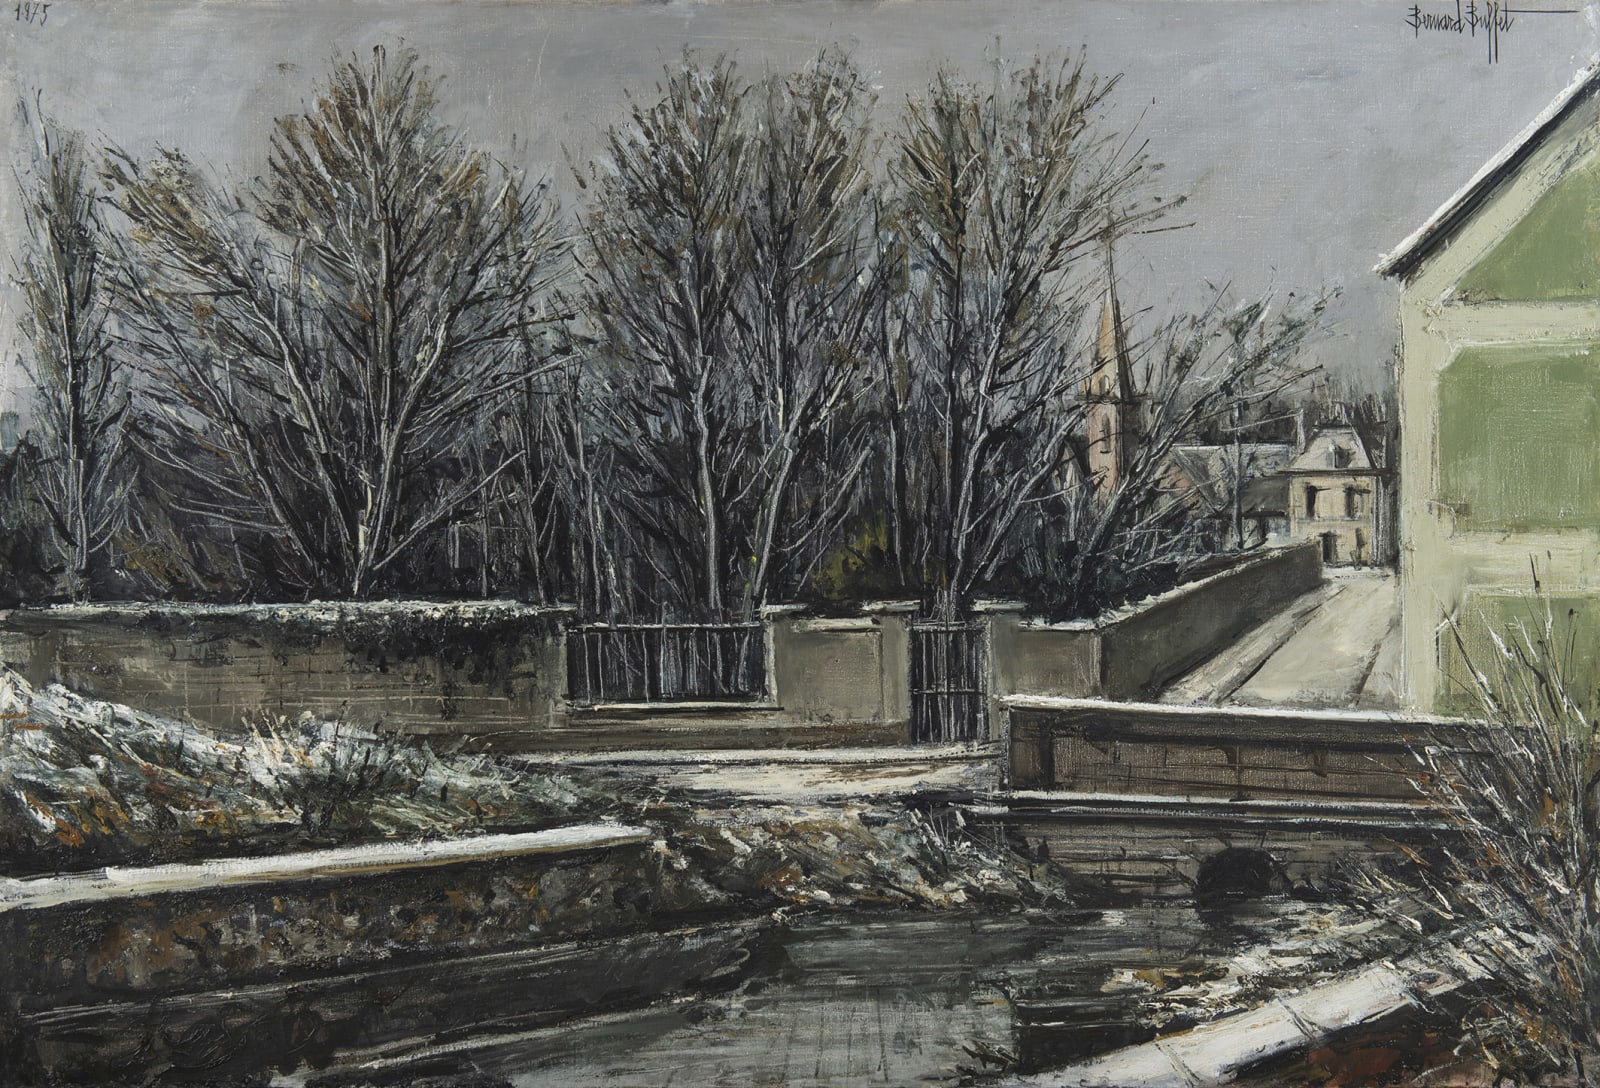 BERNARD BUFFET, Elizy, Le Vieux pont et l'église en hiver, 1975